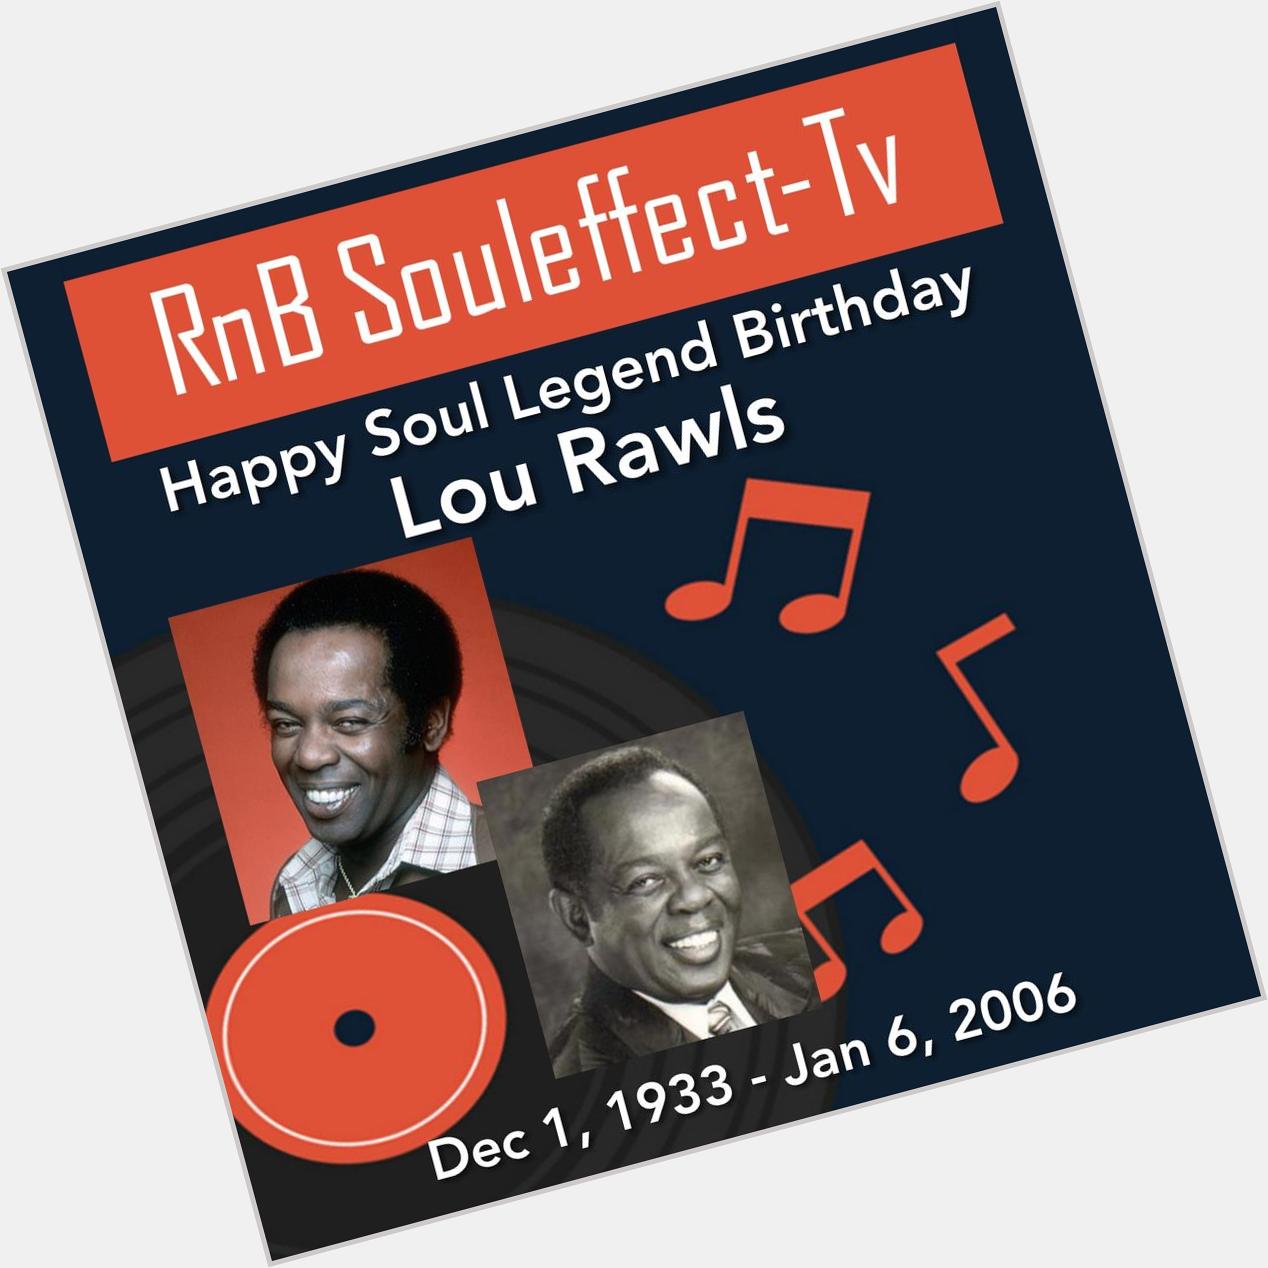 Happy Soul Legend Birthday Lou Rawls       